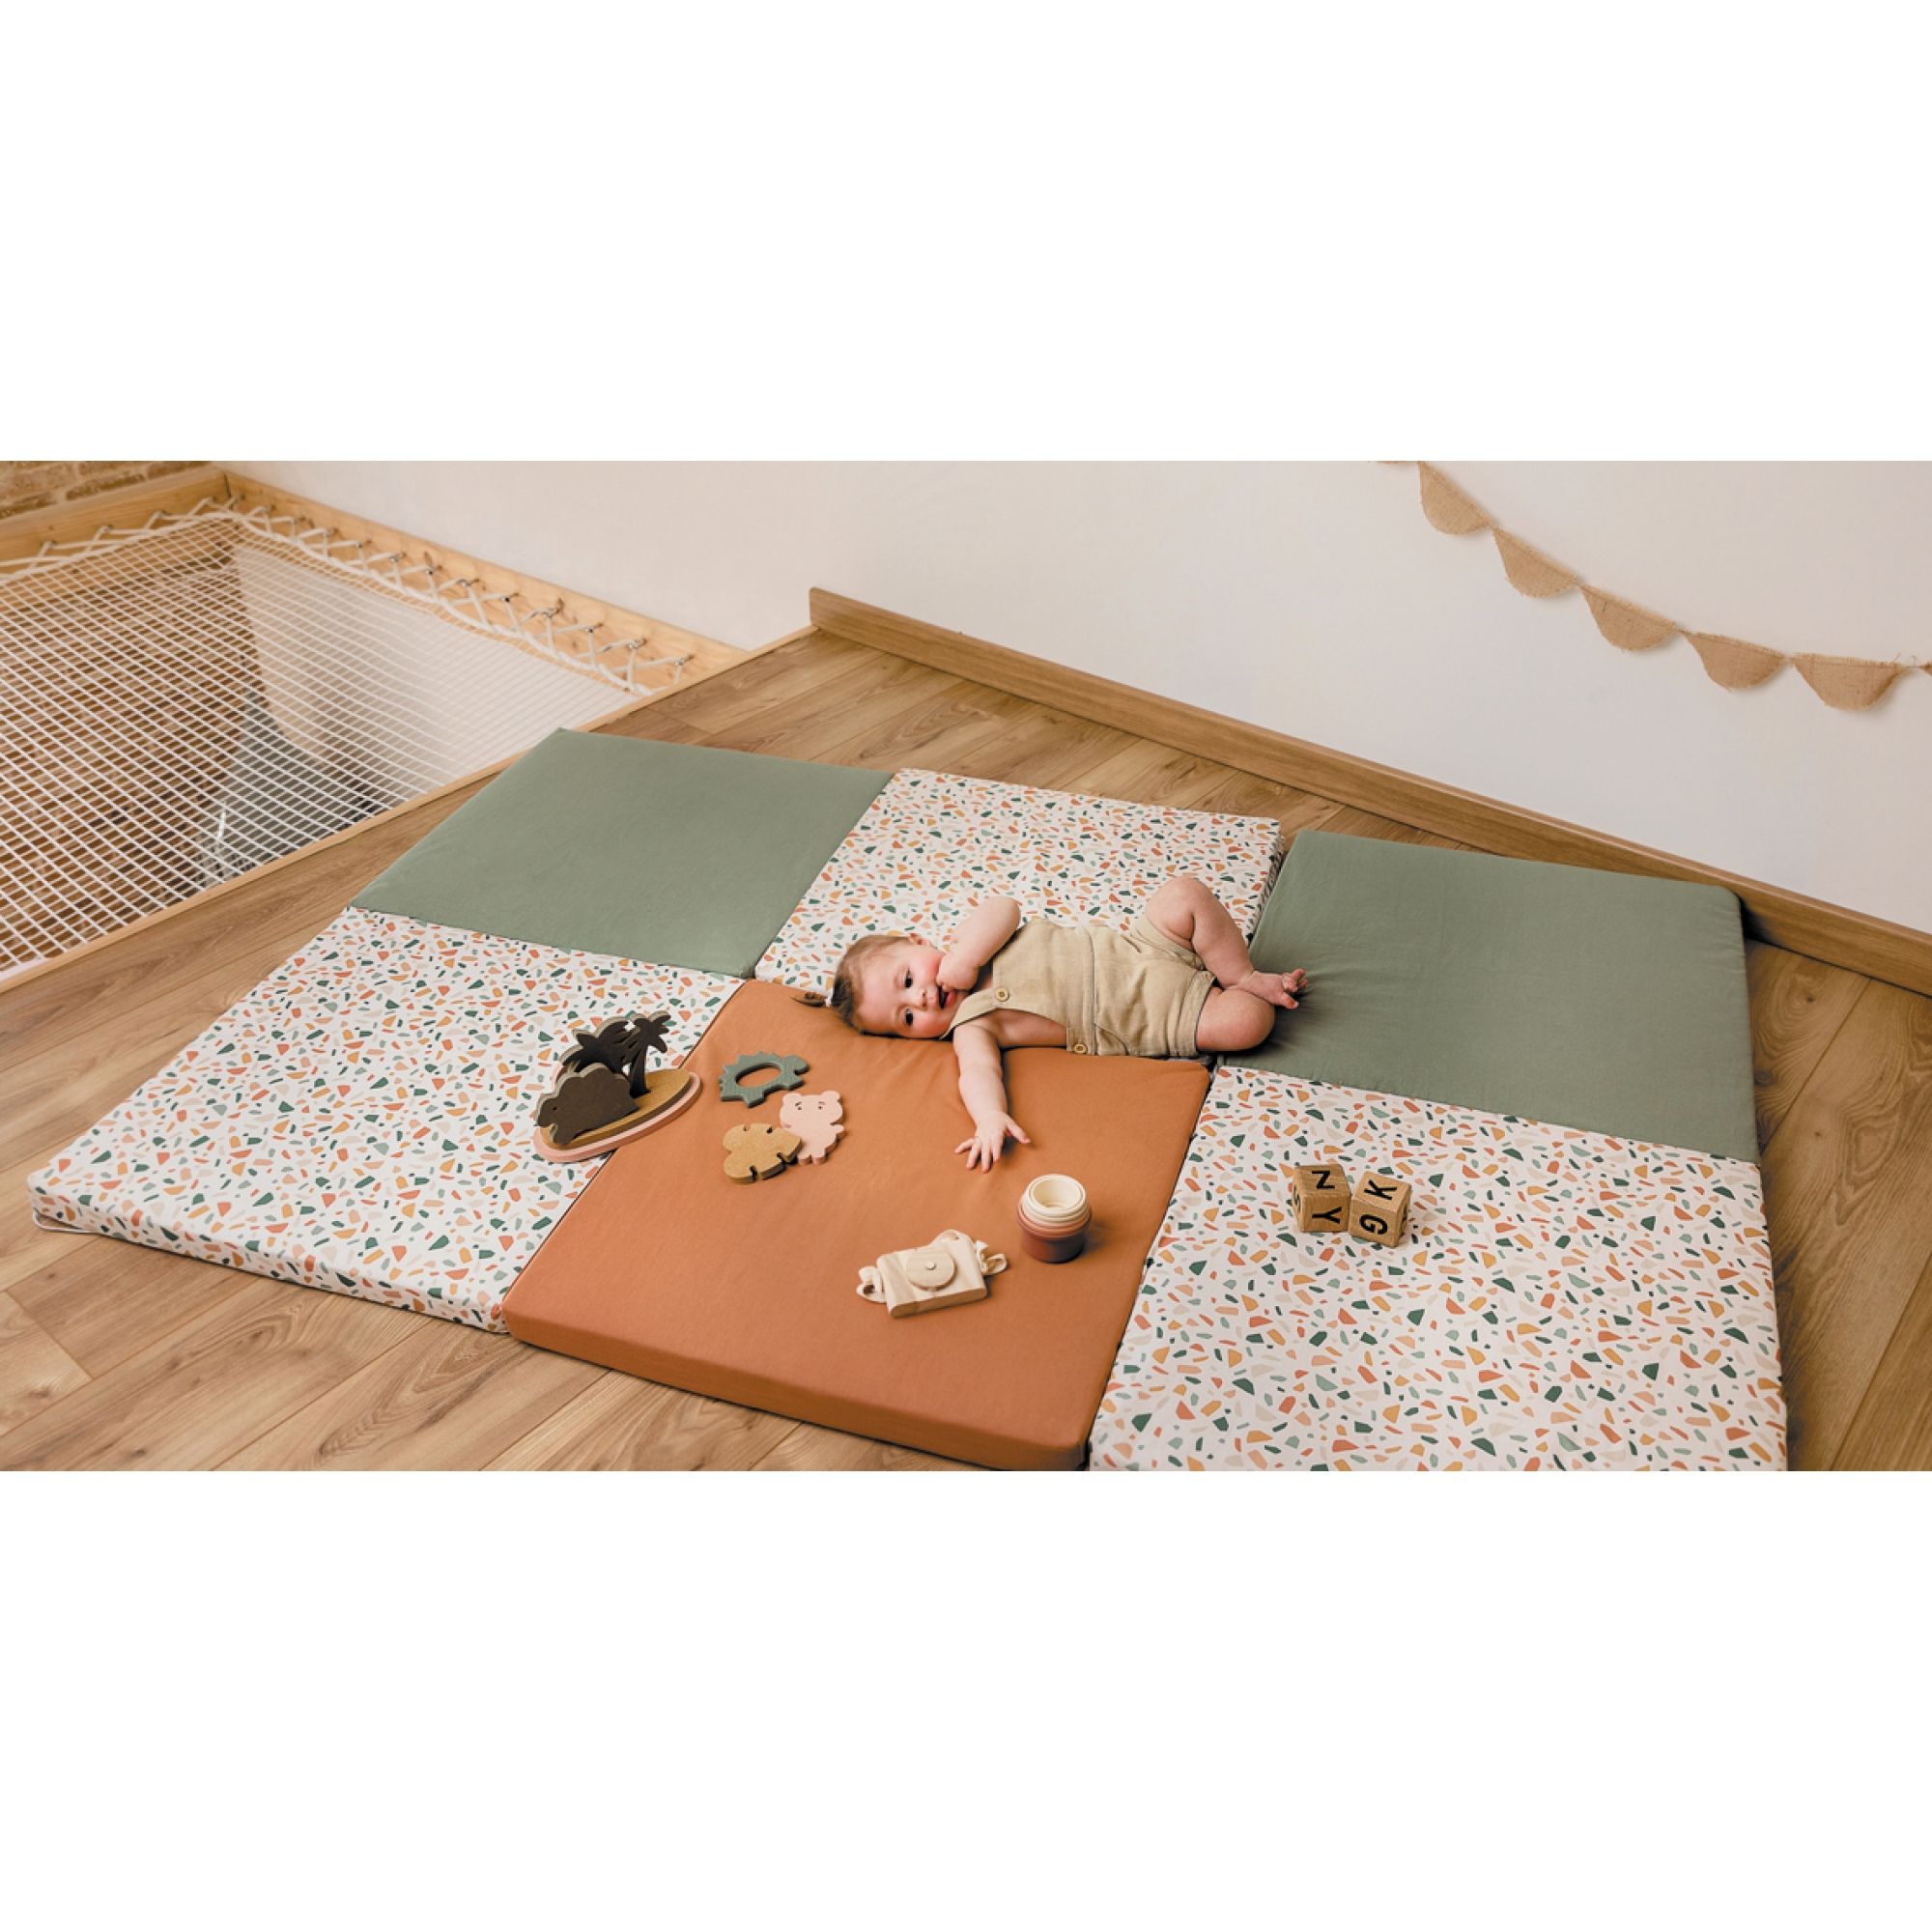 Tapis de sol bébé - allier qualité, confort et sécurité dans votre achat -  A la Une!